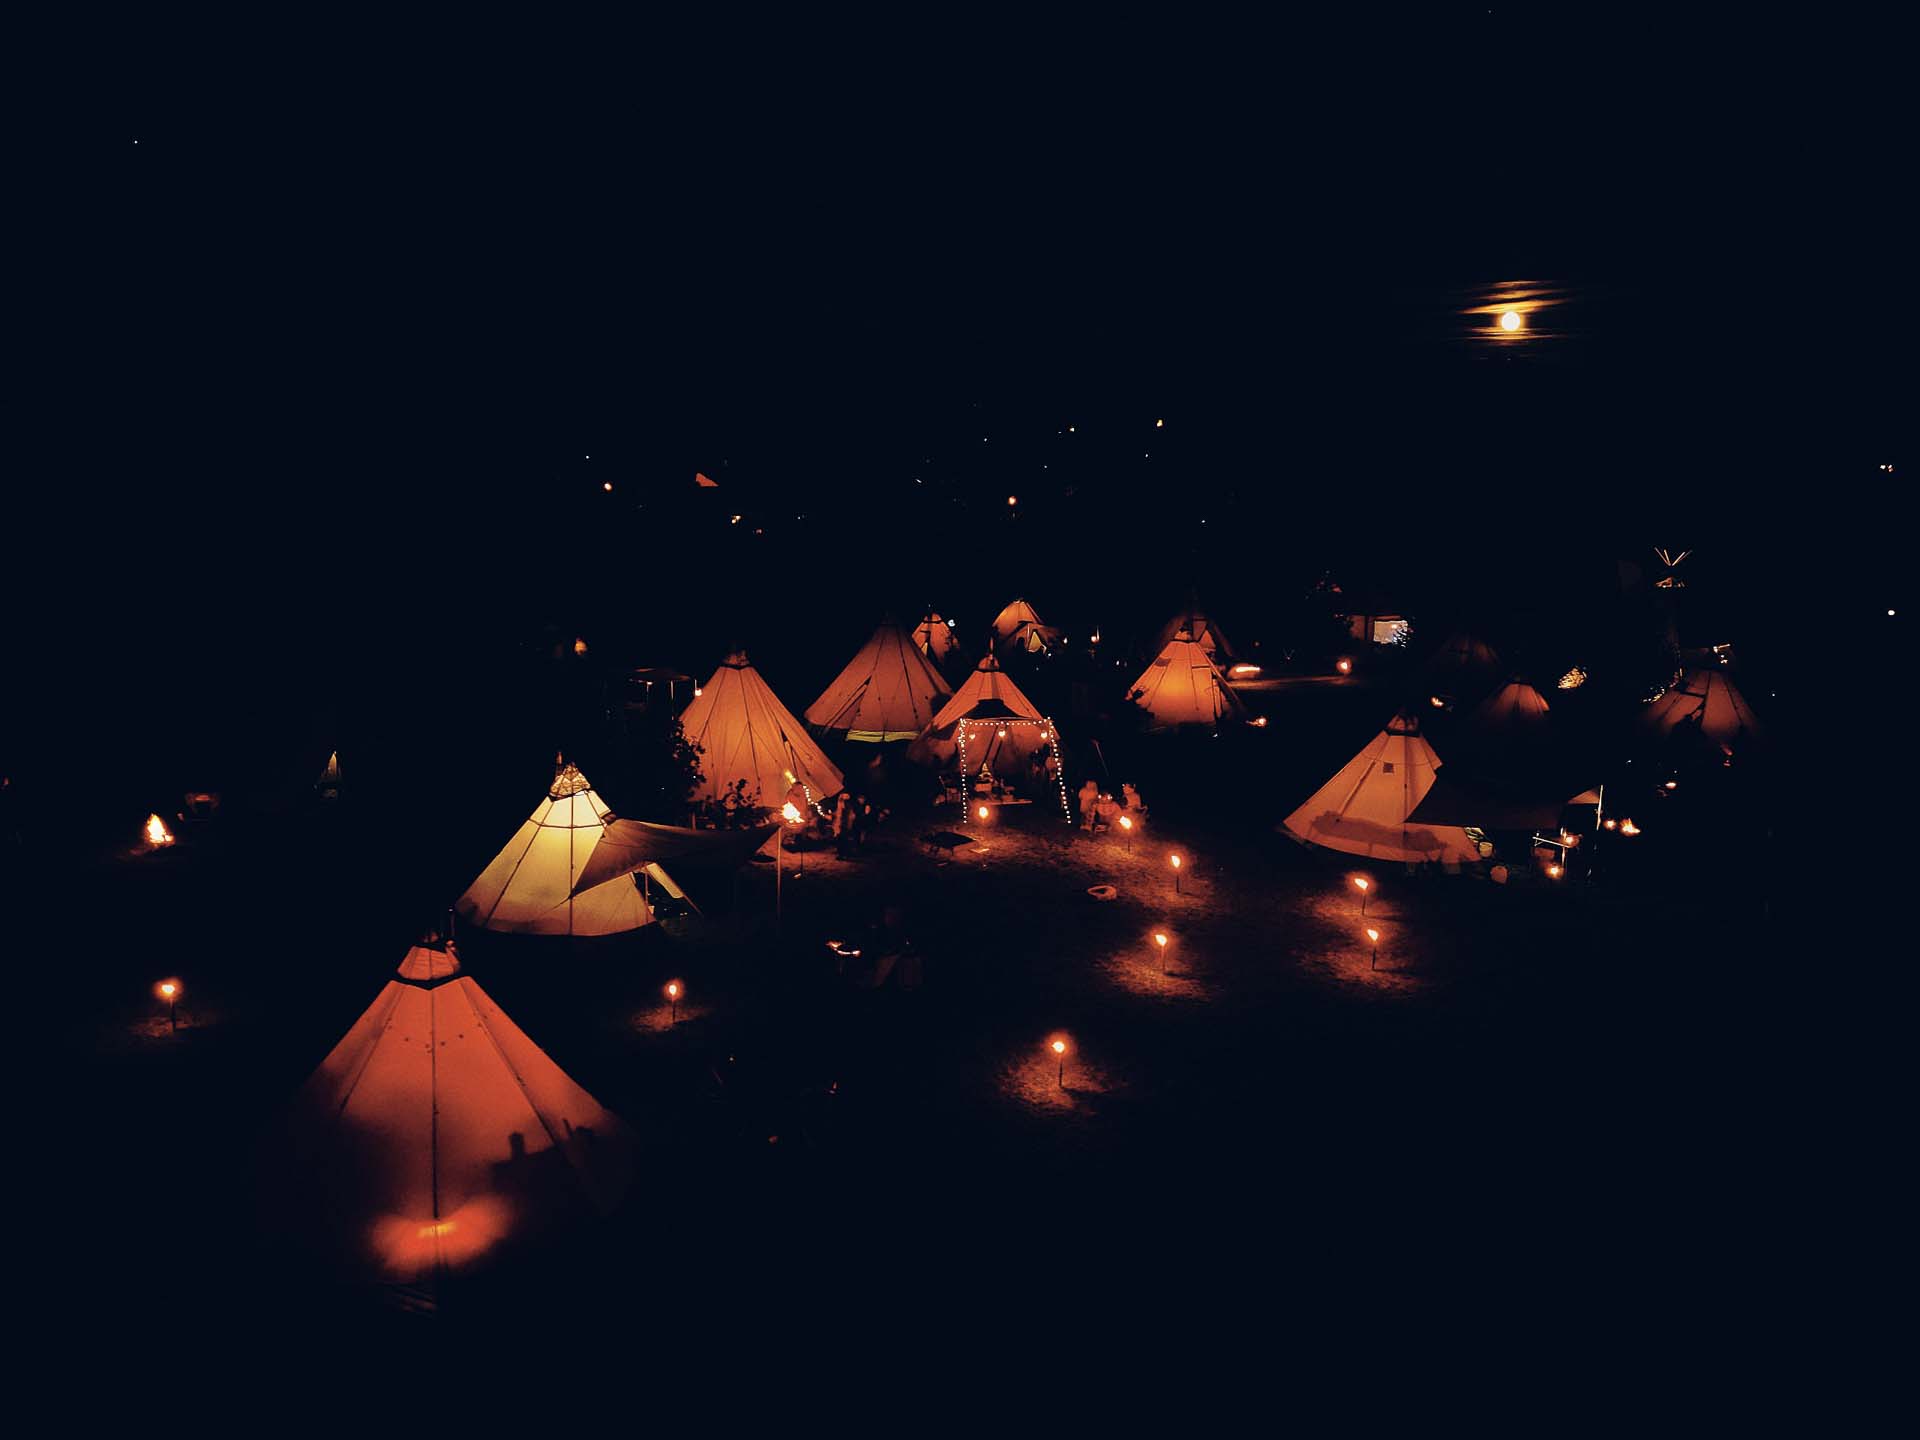 Nachtaufname aus der Luft des Tipicamps. Alle Zelte sind beleuchtet. Im Hintergrund scheint der Mond.